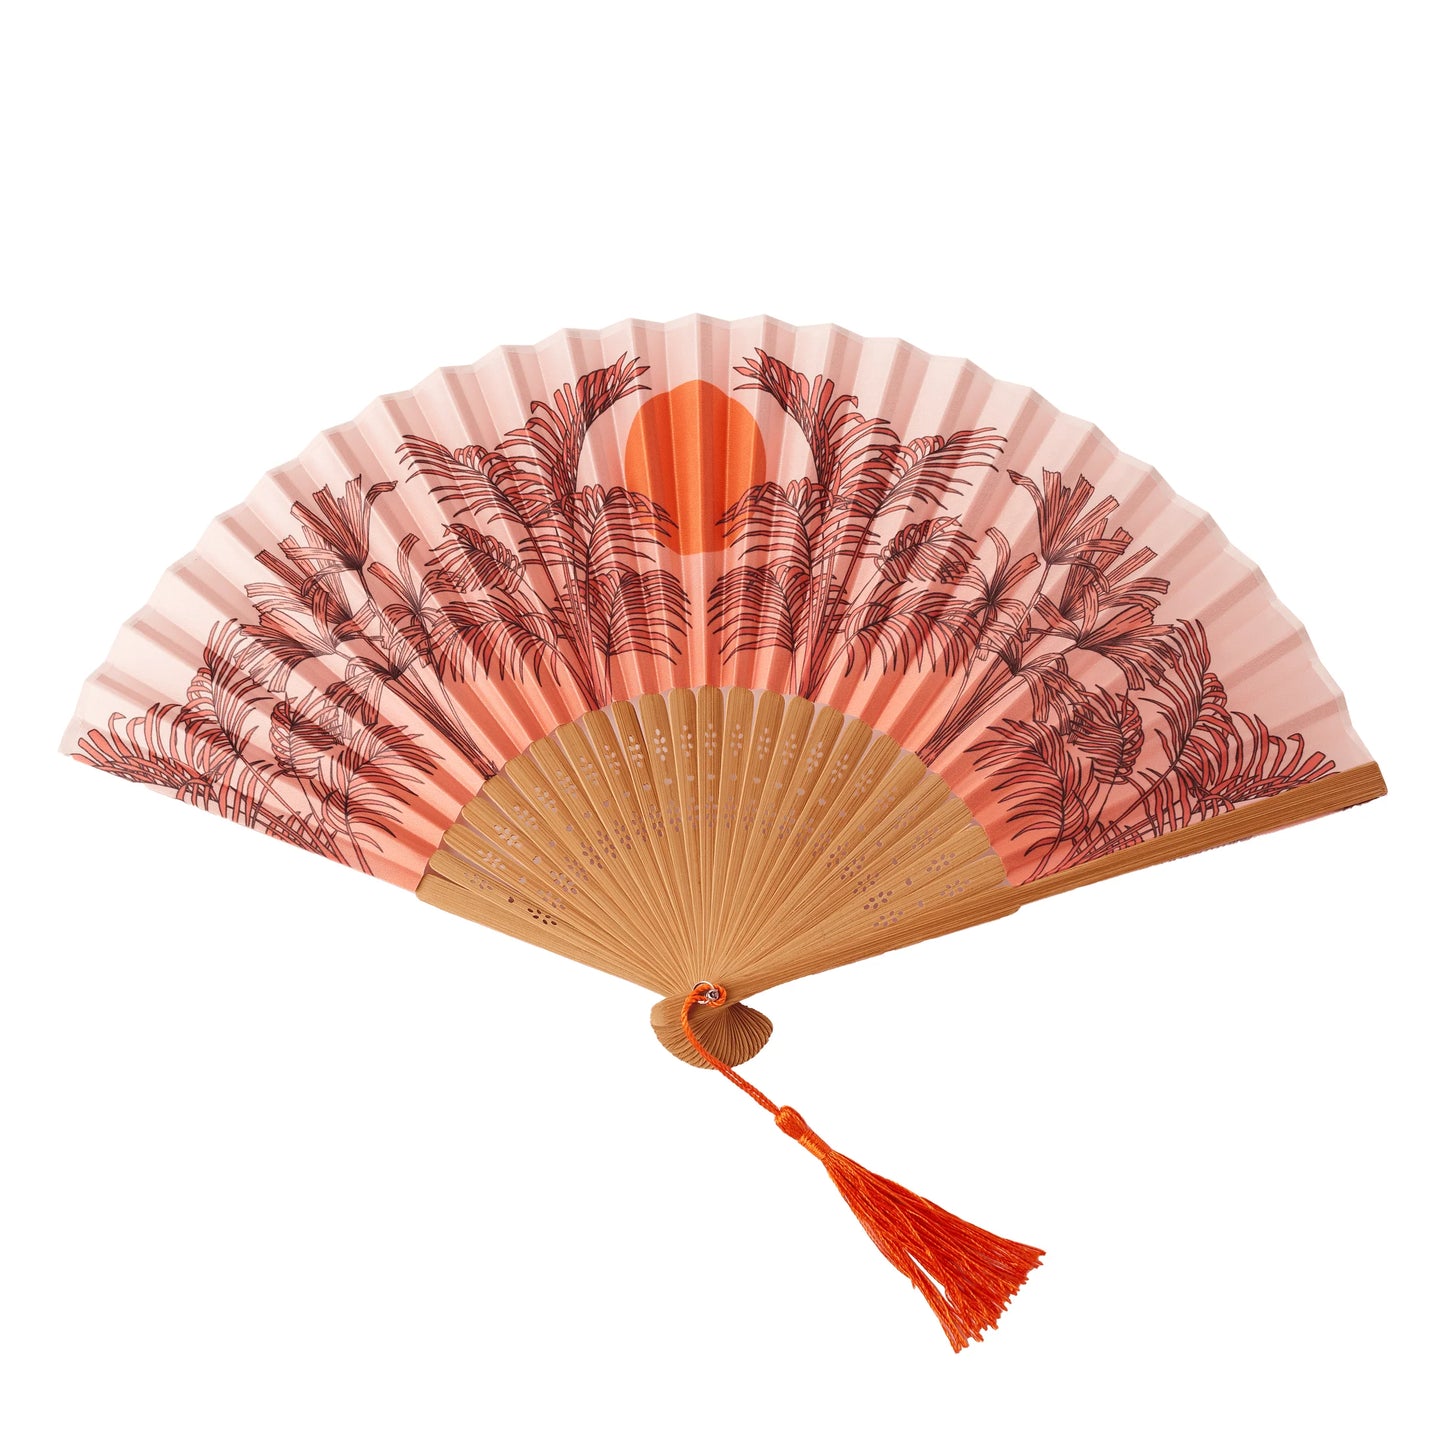 Folding Fan in Peachy Orange